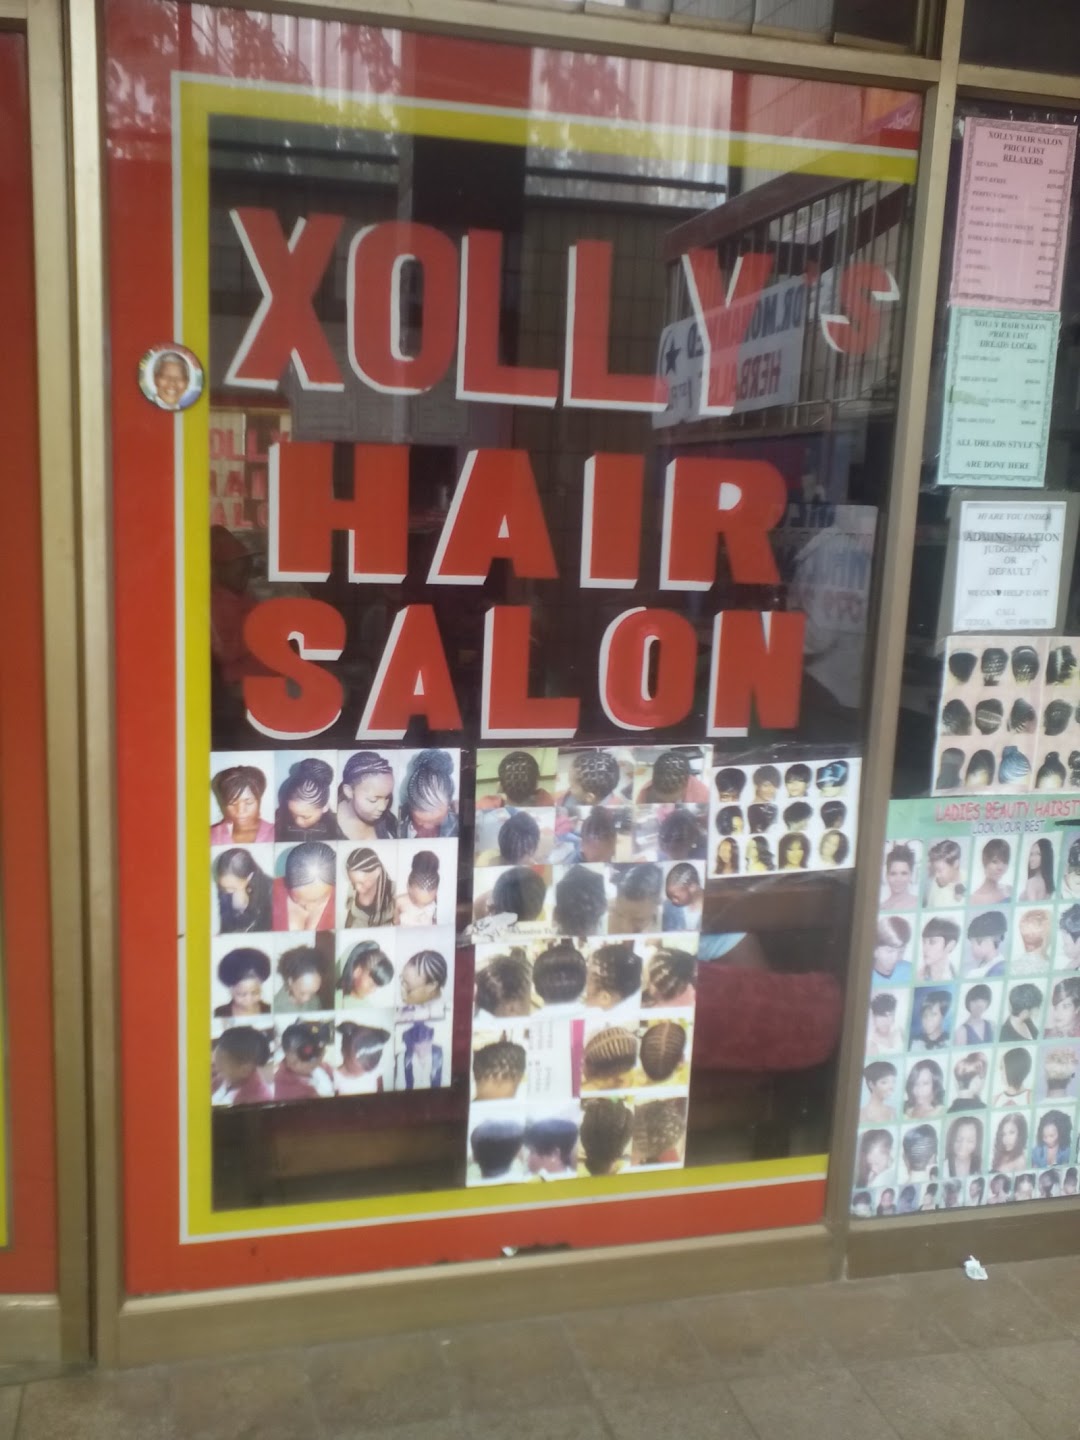 Xollys Hair Salon